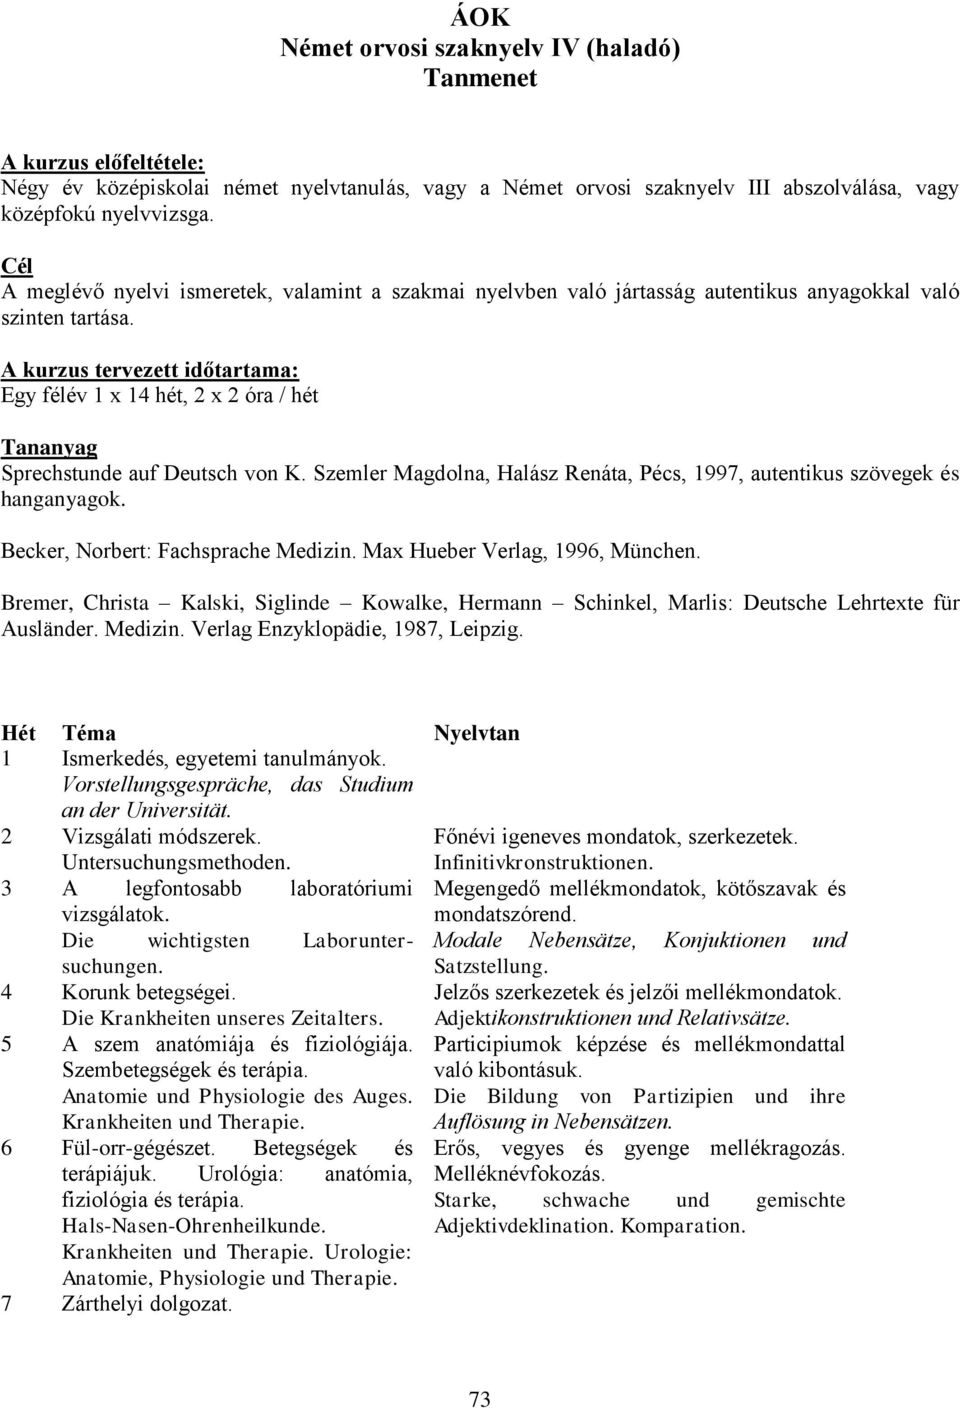 A kurzus tervezett időtartama: Egy félév 1 x 14 hét, 2 x 2 óra / hét Tananyag Sprechstunde auf Deutsch von K. Szemler Magdolna, Halász Renáta, Pécs, 1997, autentikus szövegek és hanganyagok.